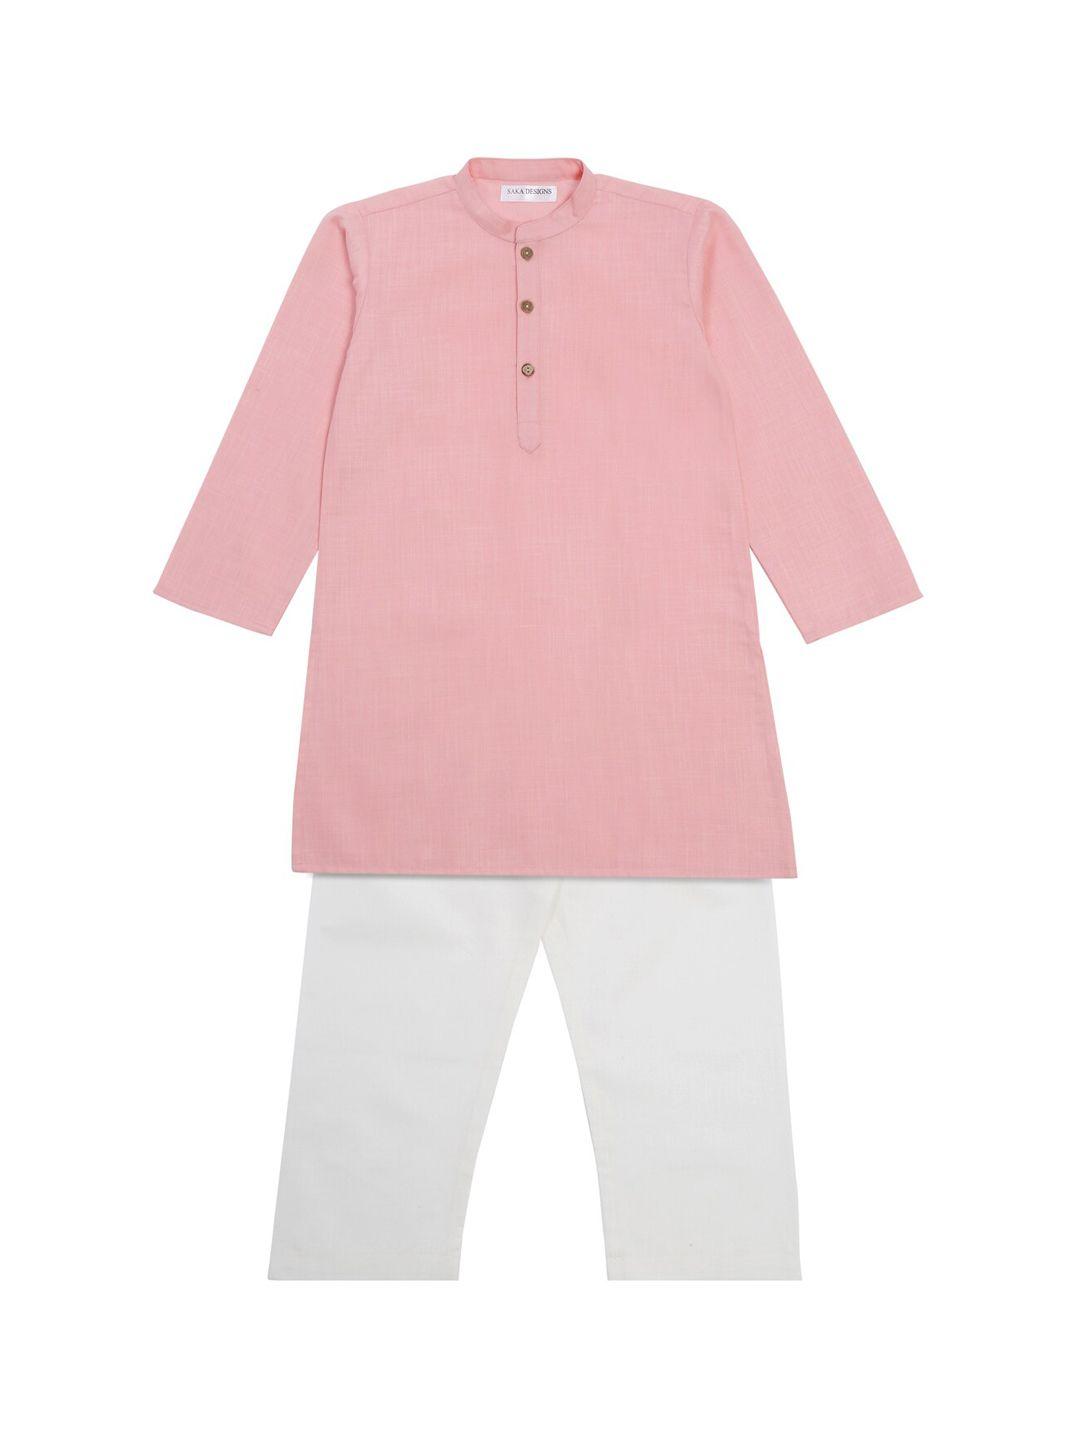 saka designs boys mandarin collar straight kurta with pyjamas